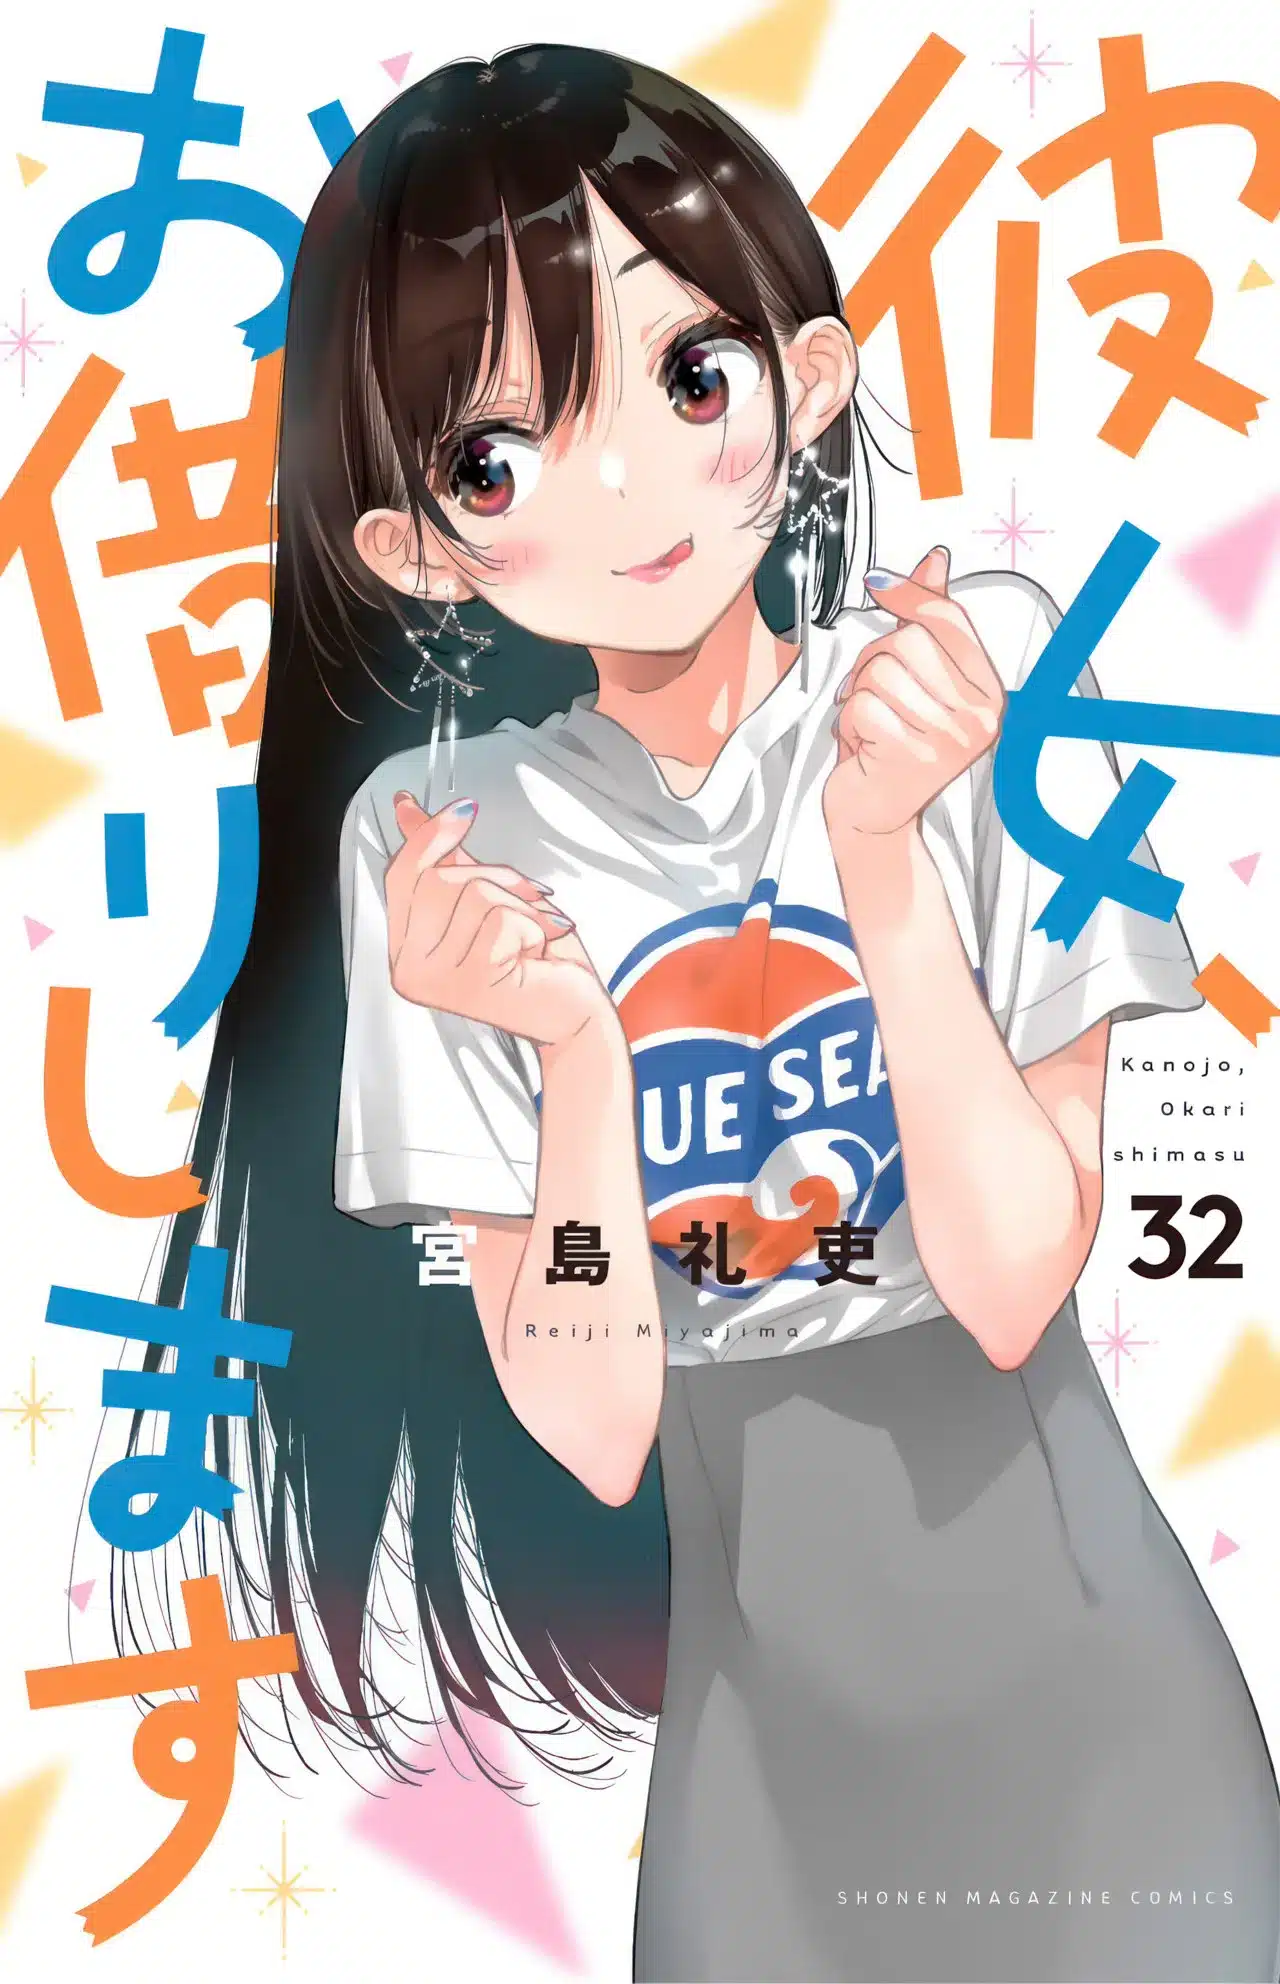 Kanojo Okarishimasu Manga Vol 32 Ind